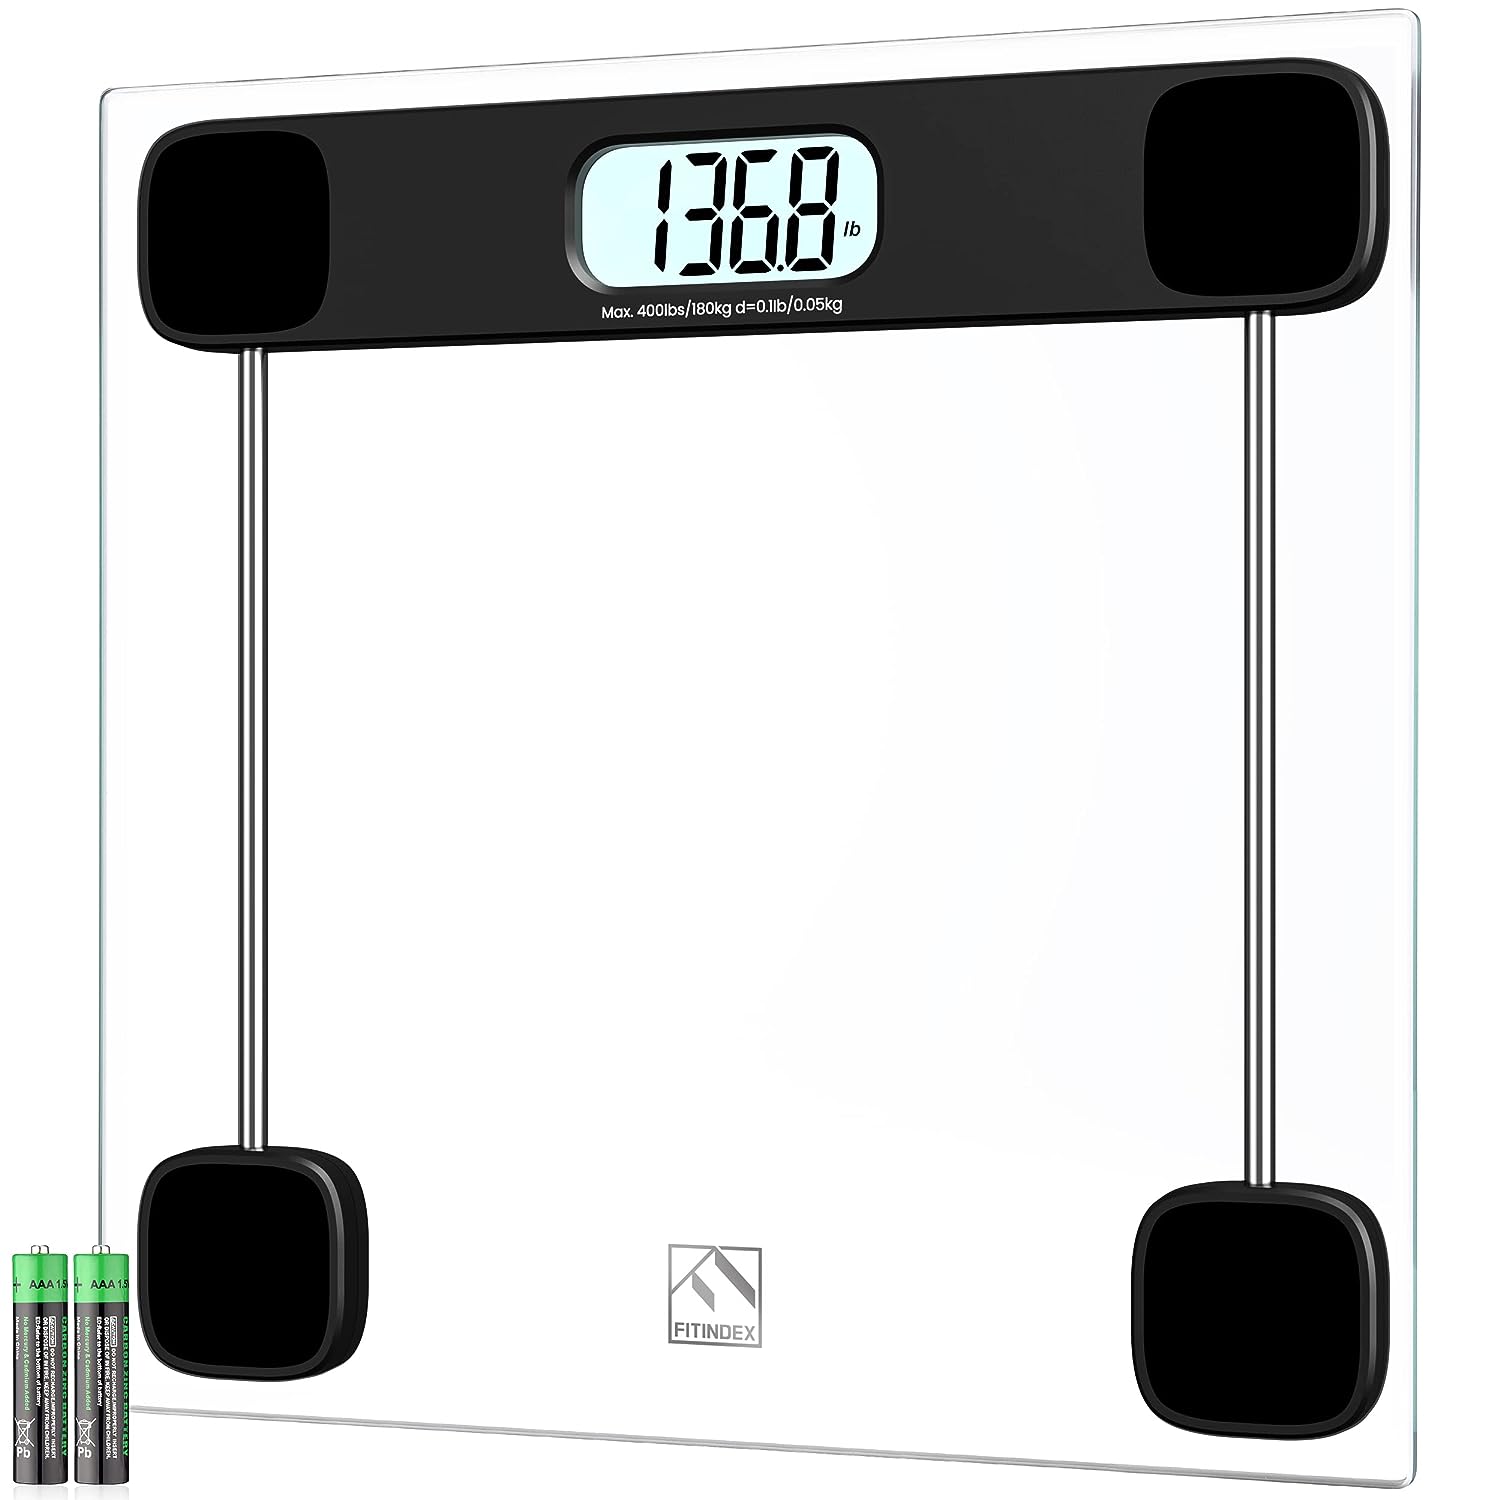 Smart Body Scale 28WBL